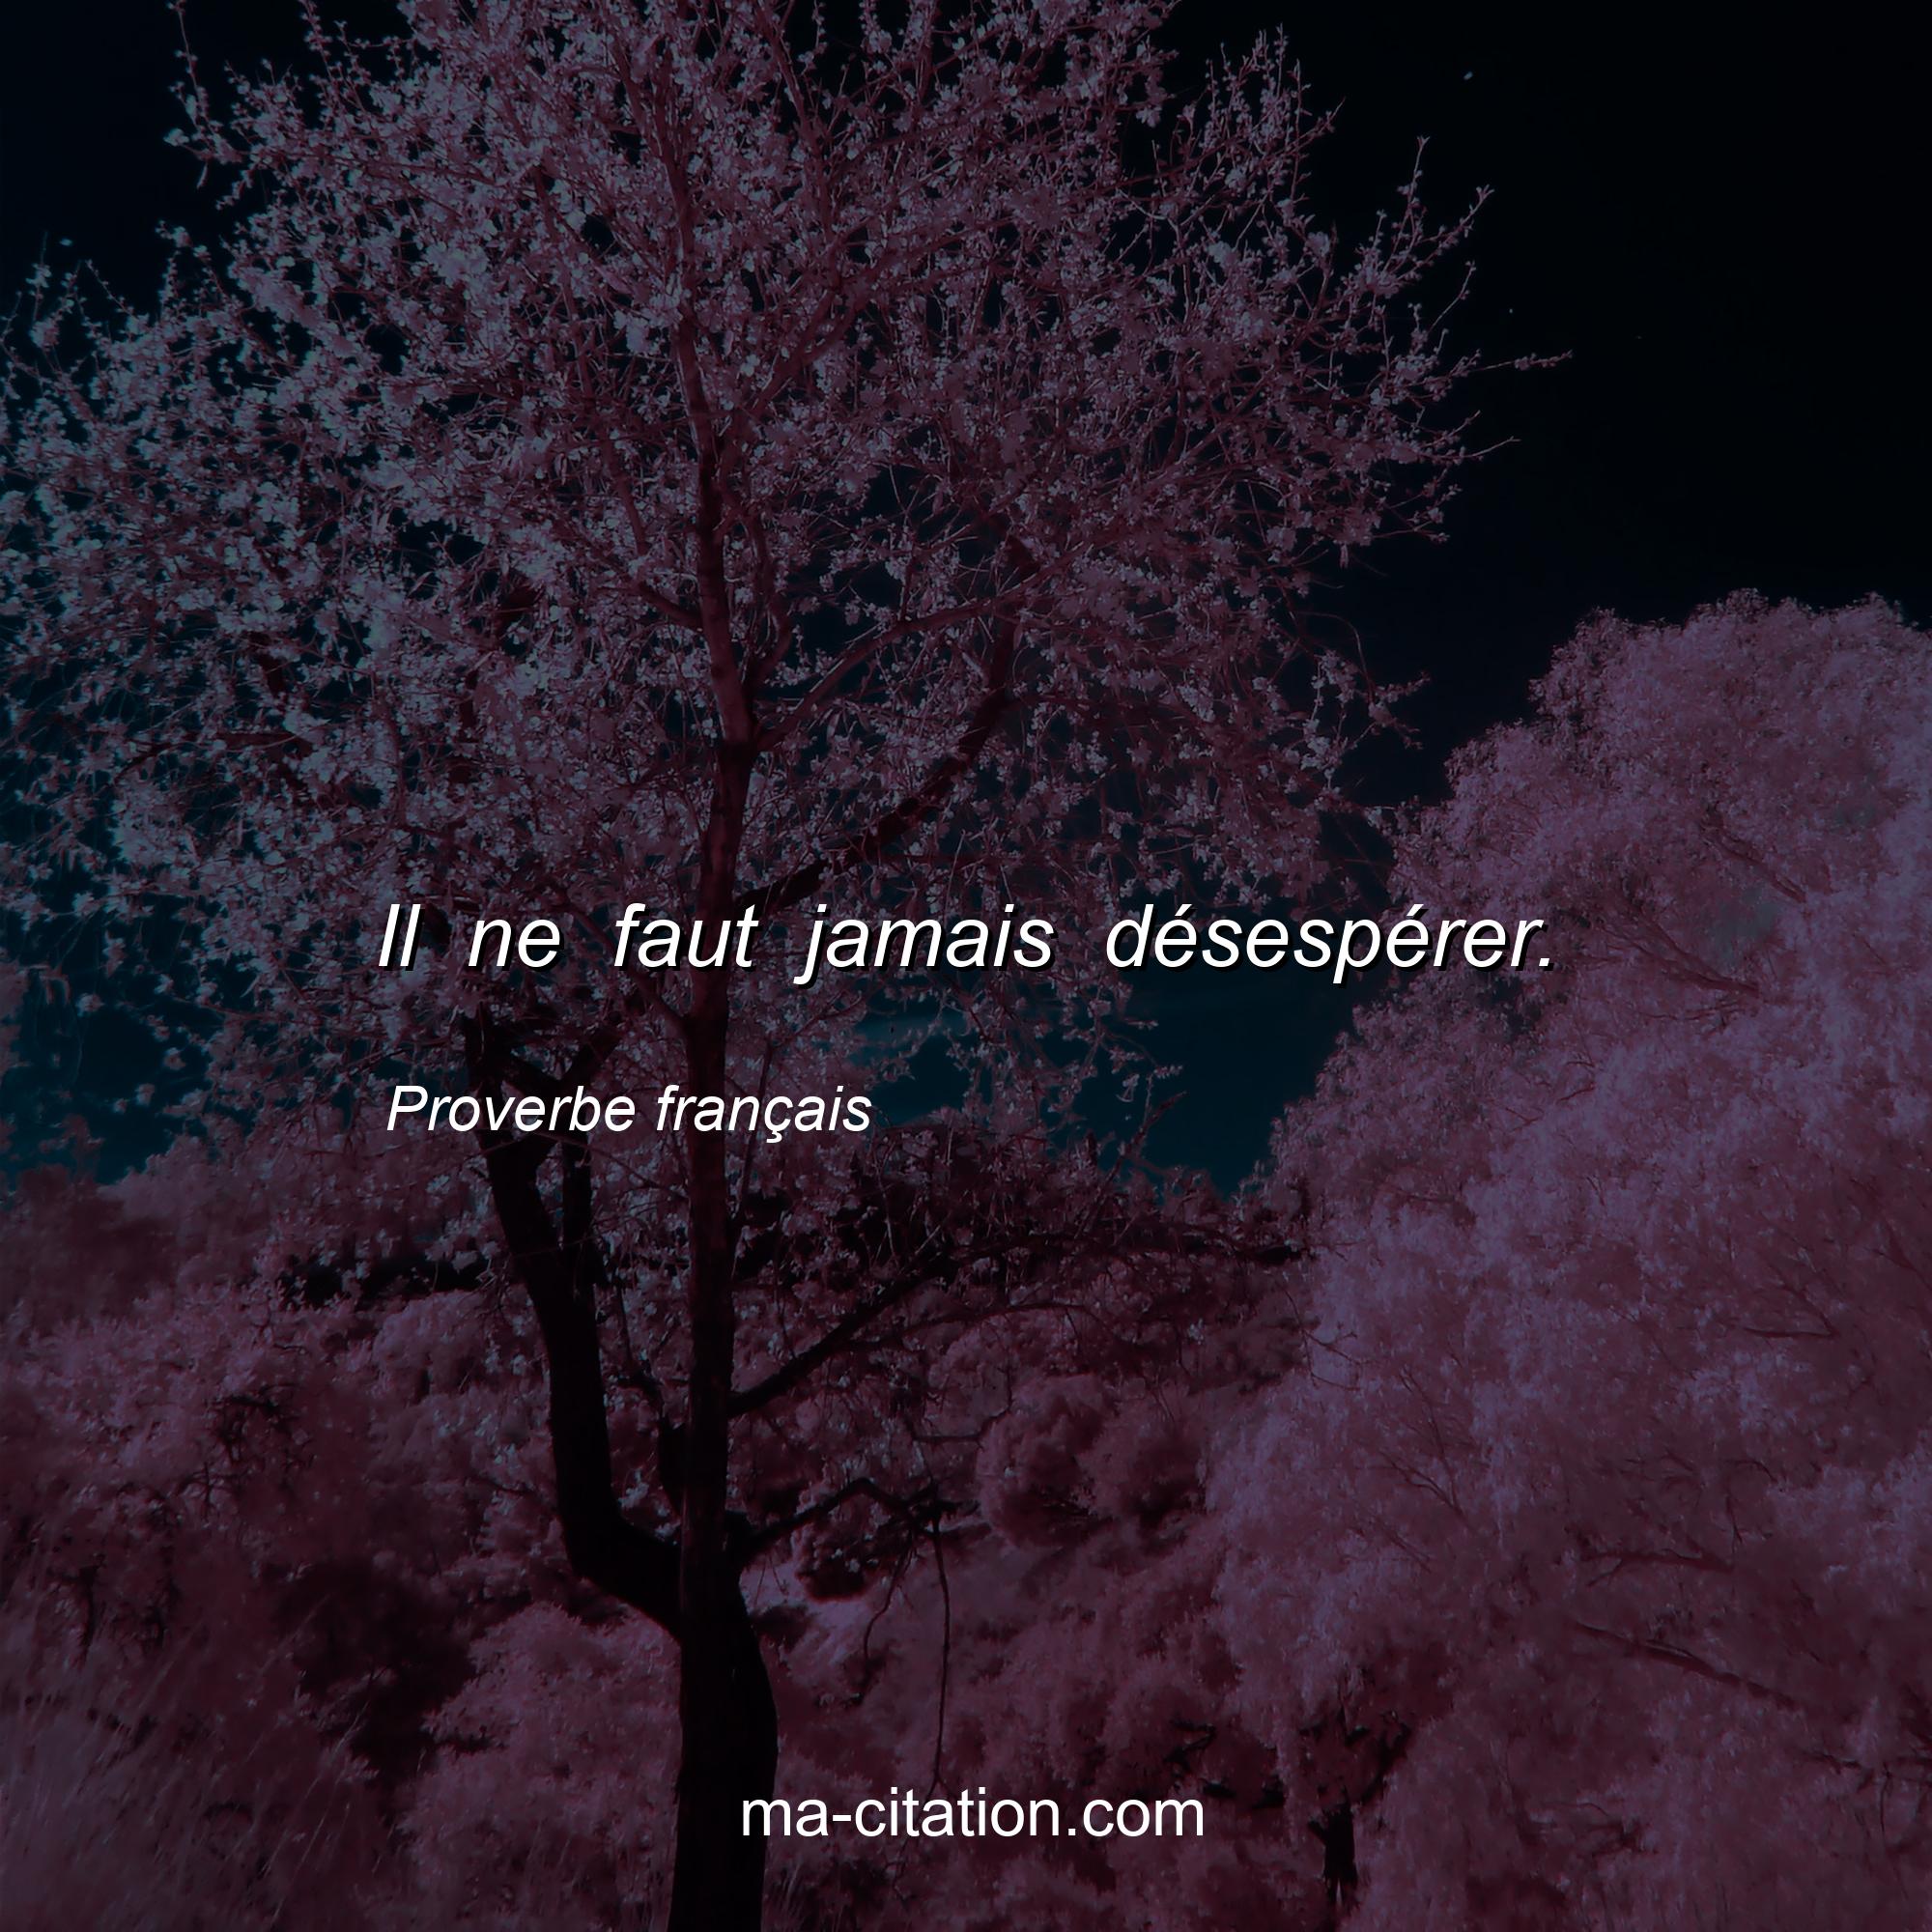 Proverbe français : Il ne faut jamais désespérer.